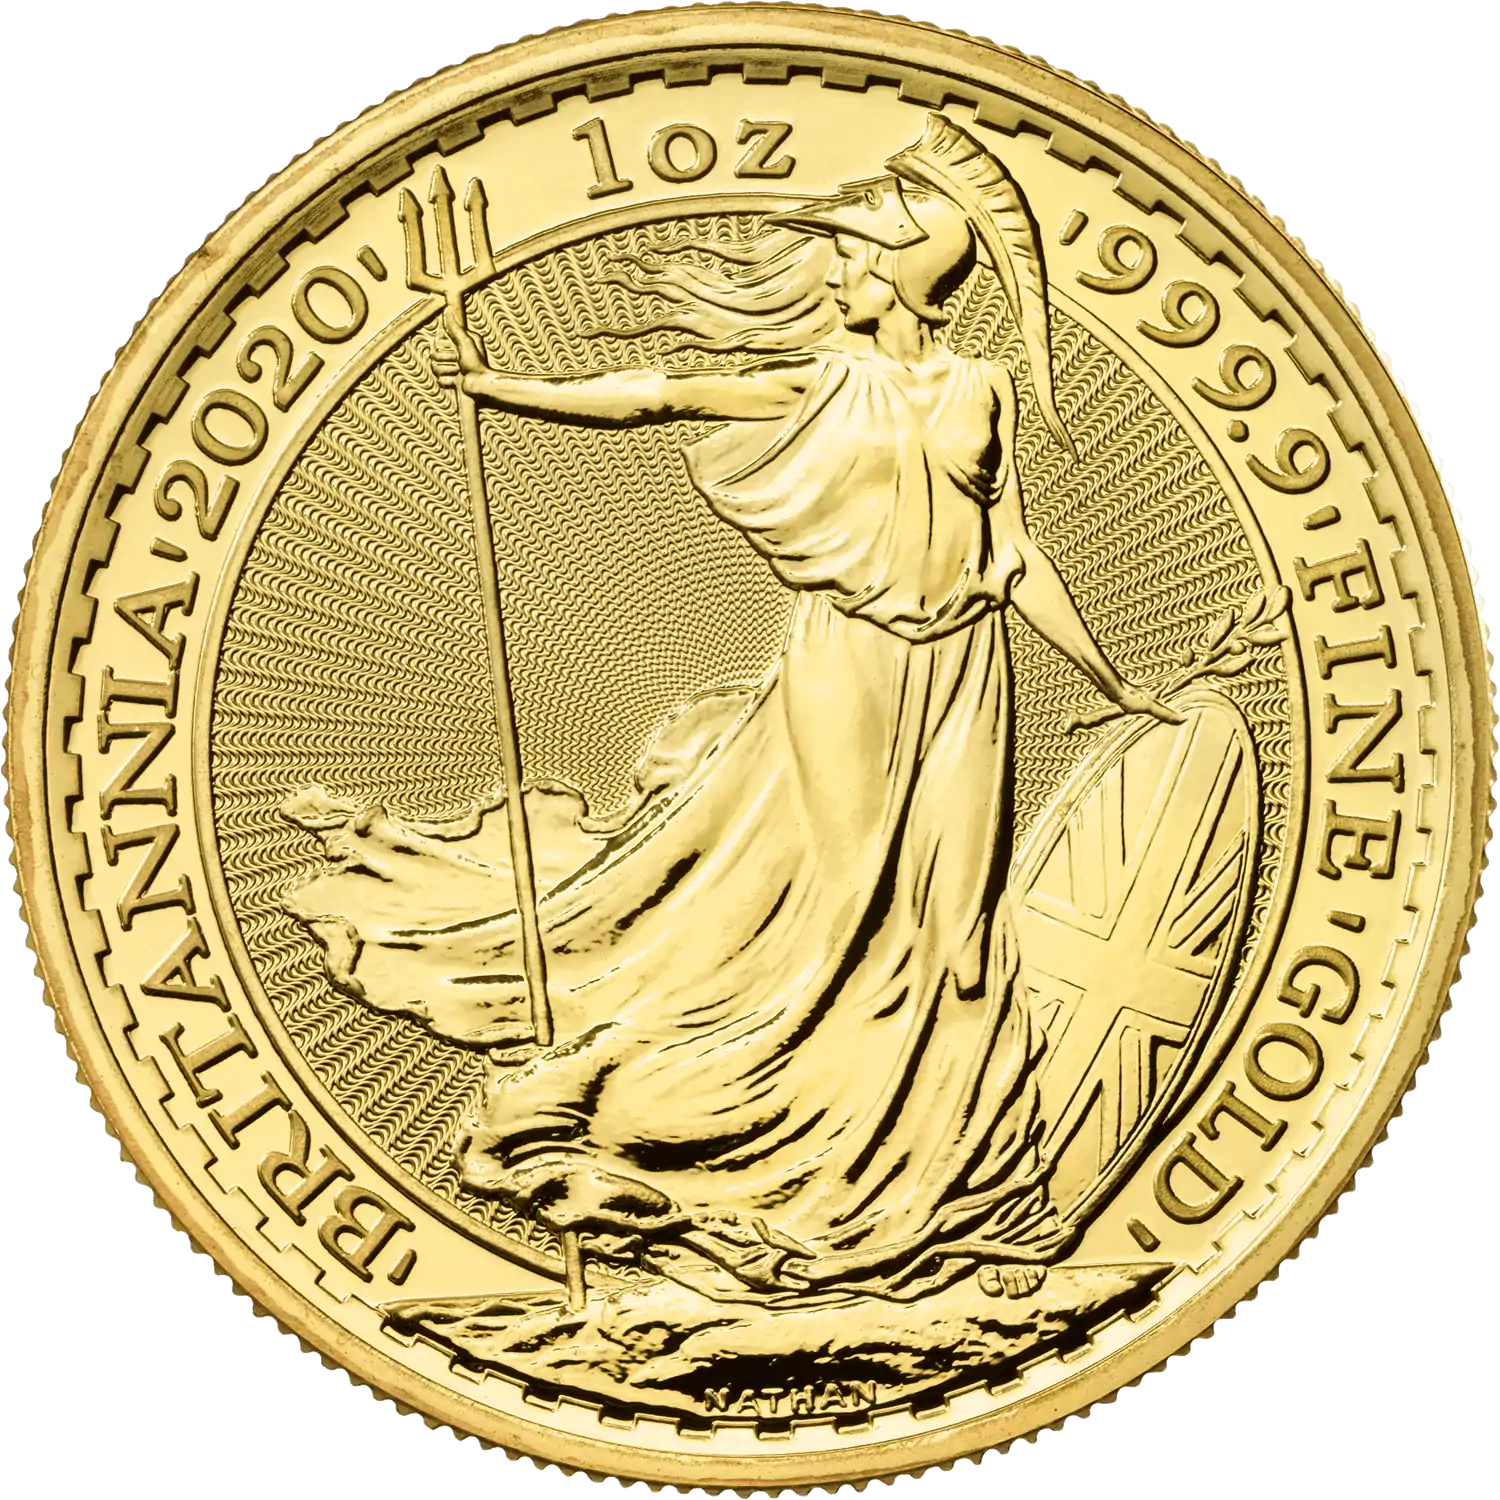 Britannia zestaw 3 x 1 uncja - złota moneta